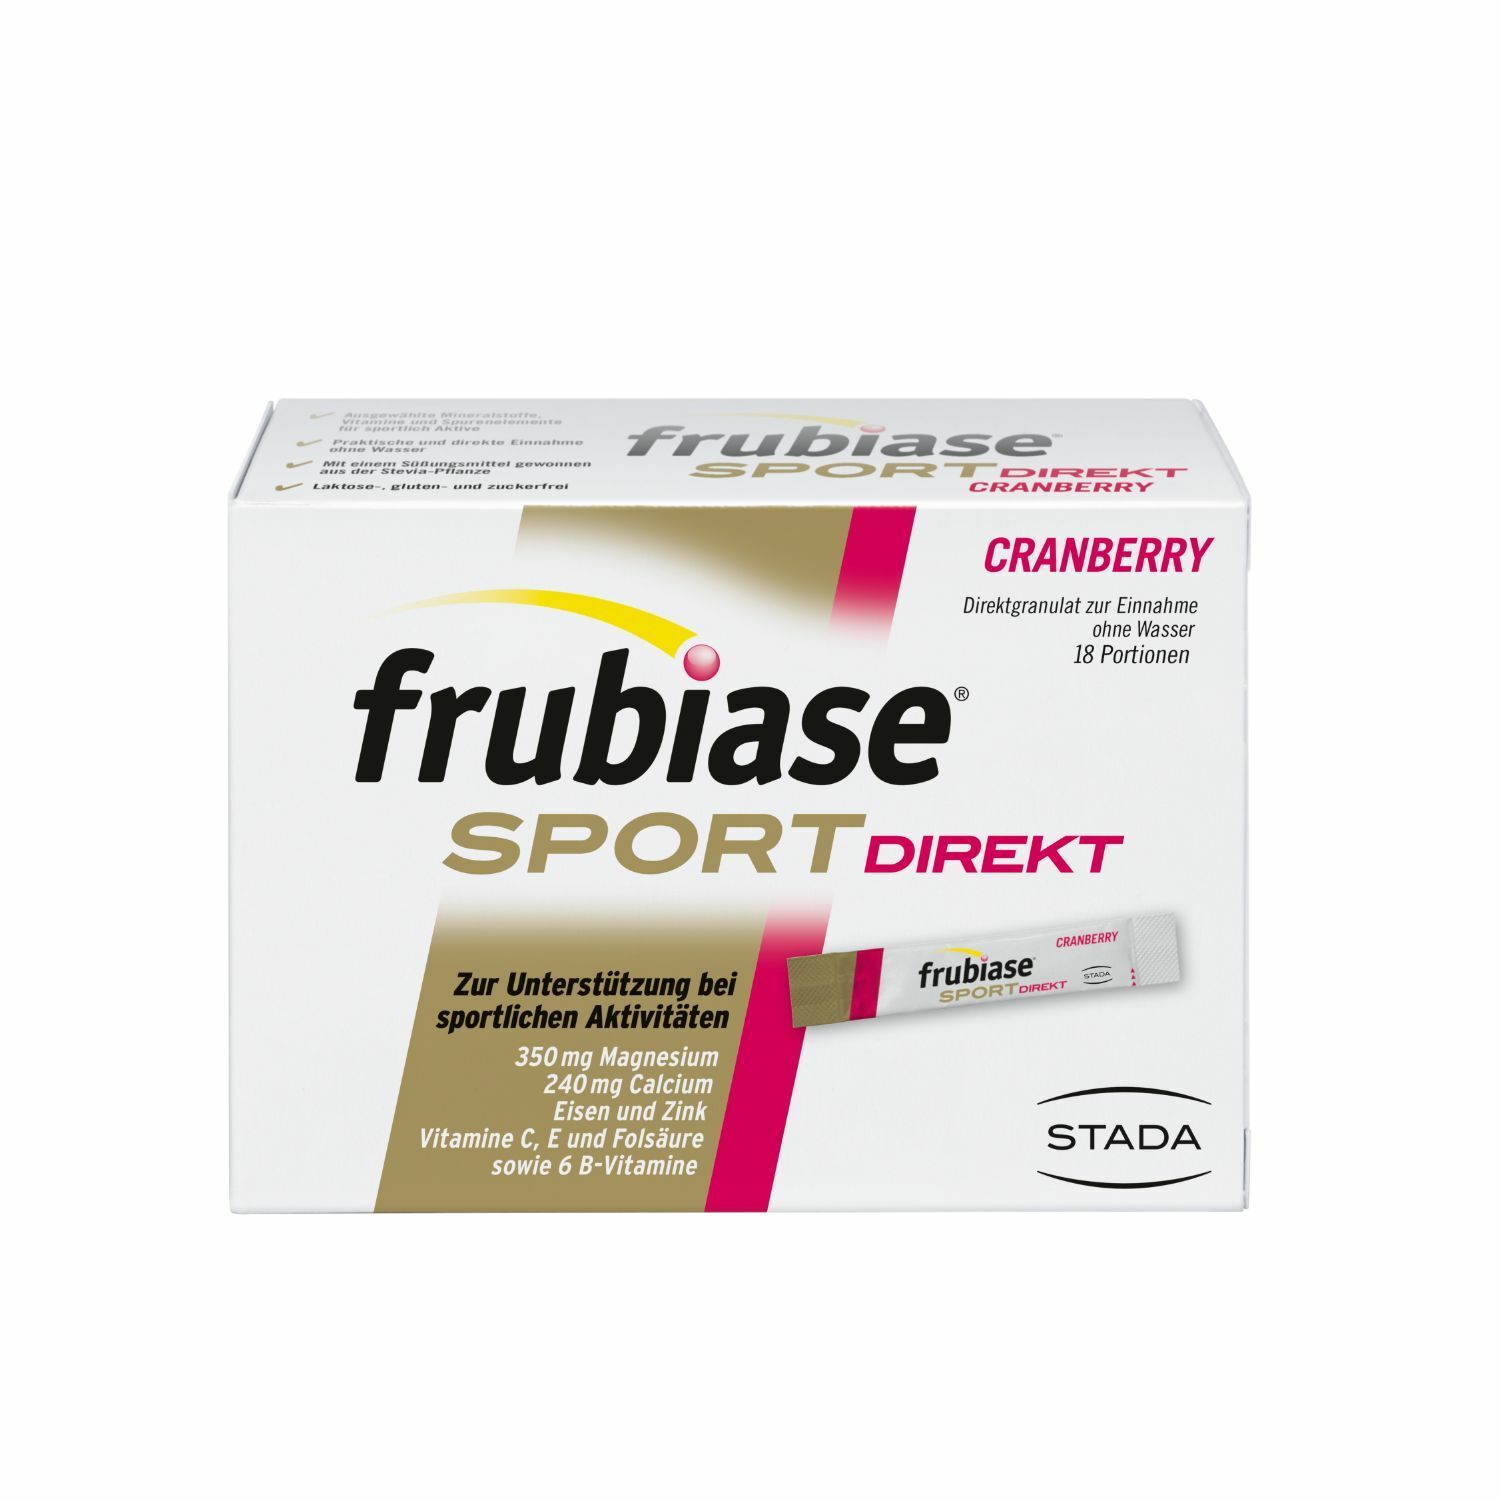 frubiase® SPORT DIREKT - Mit hochdosierten Mineralstoffen, Vitaminen und Spurenelementen - Nährstoffversorgung beim Sport, Magnesium, Calcium